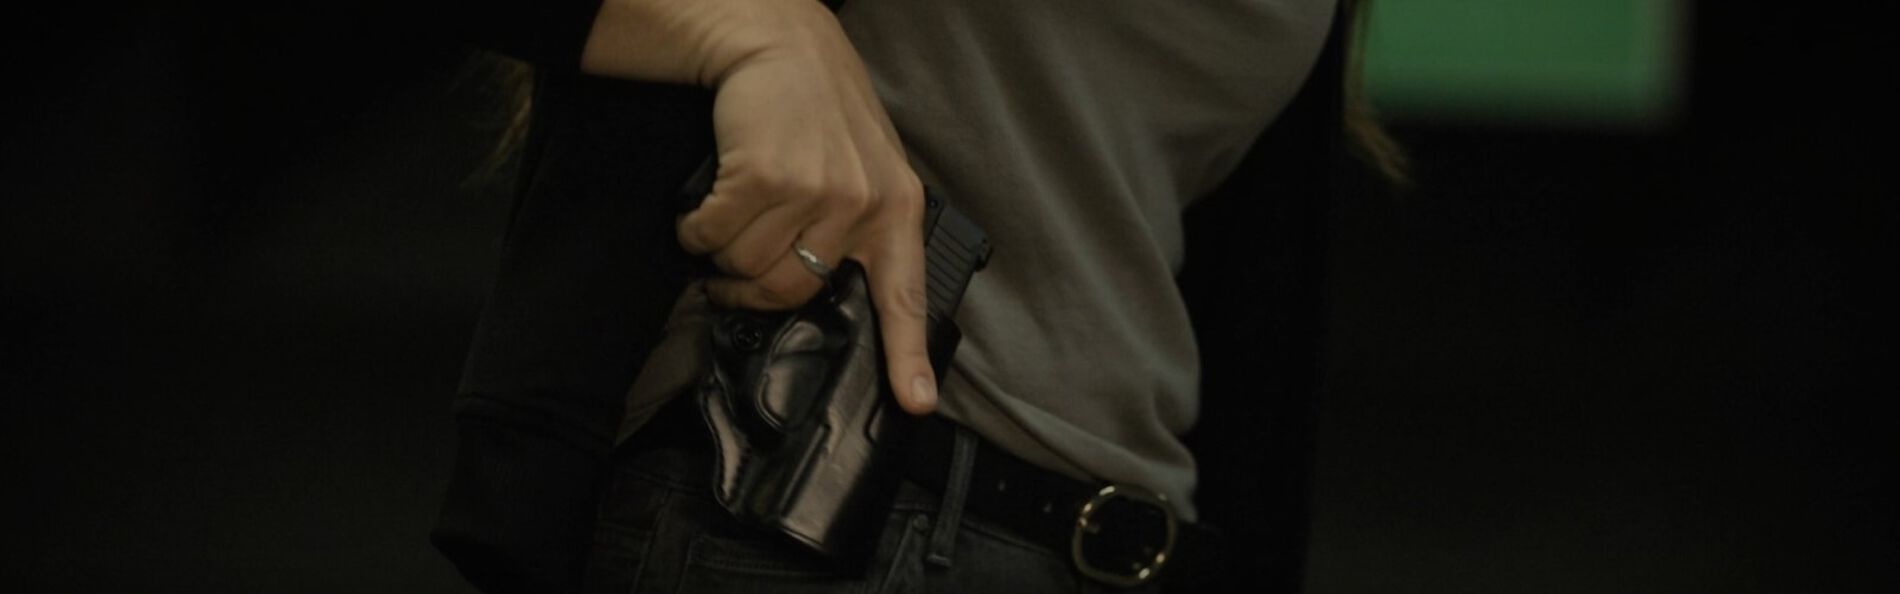 Krystal Dunn removing a handgun from its holster